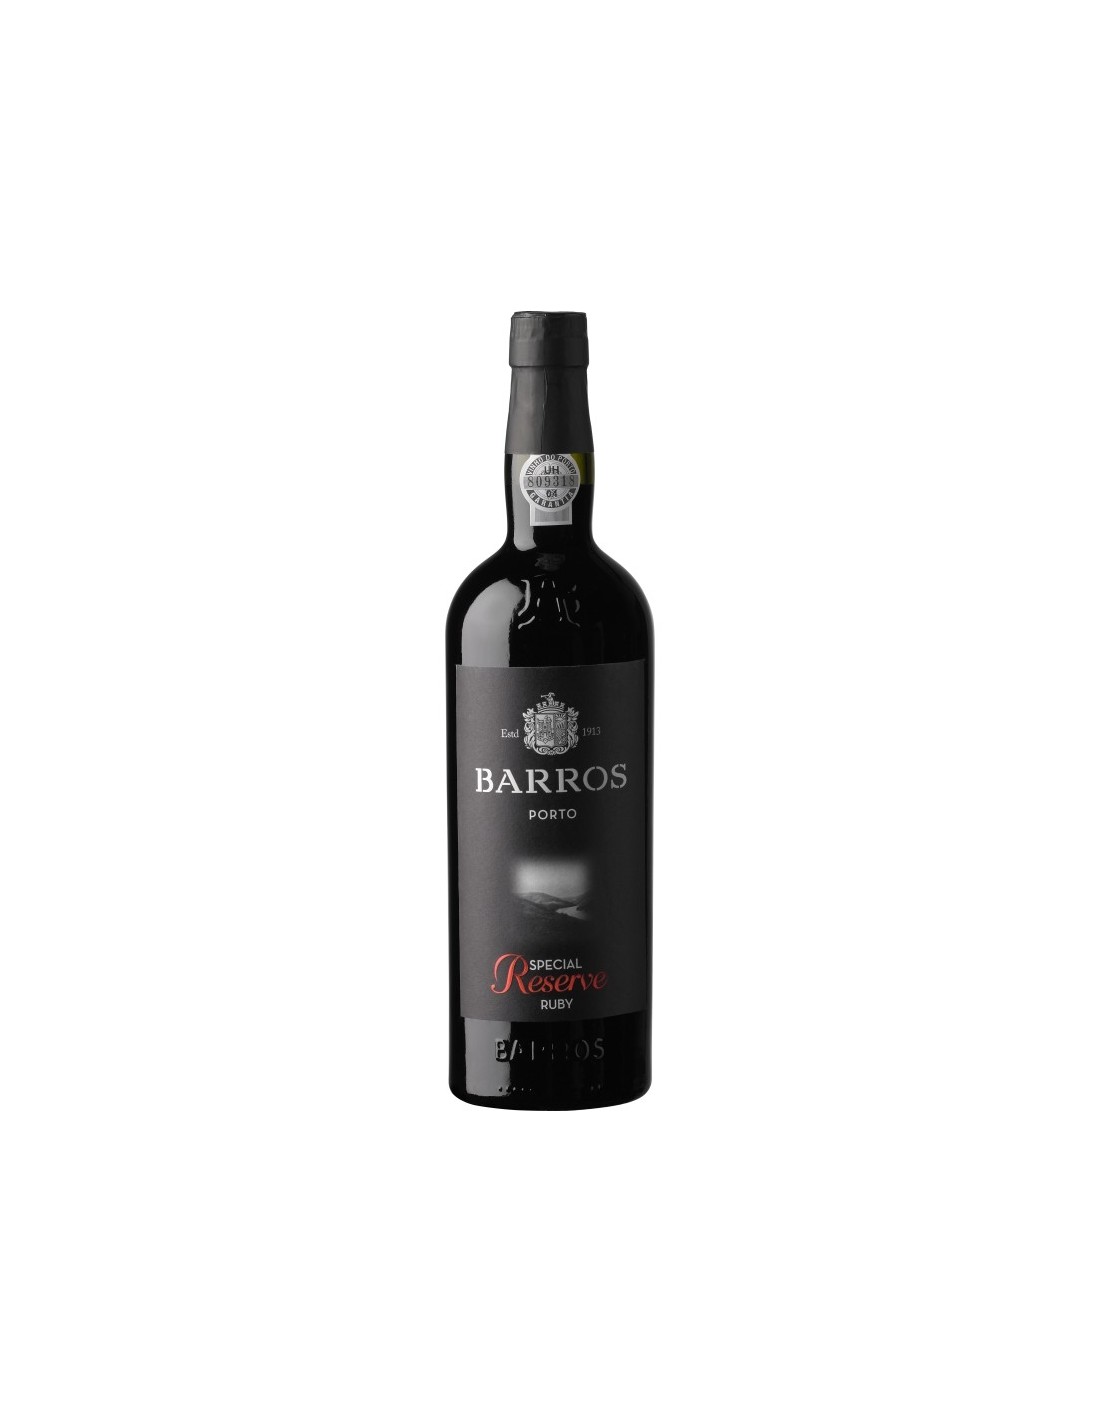 Vin porto rosu, Barros Special Reserve Ruby, 0.75L, 20% alc., Portugalia alcooldiscount.ro